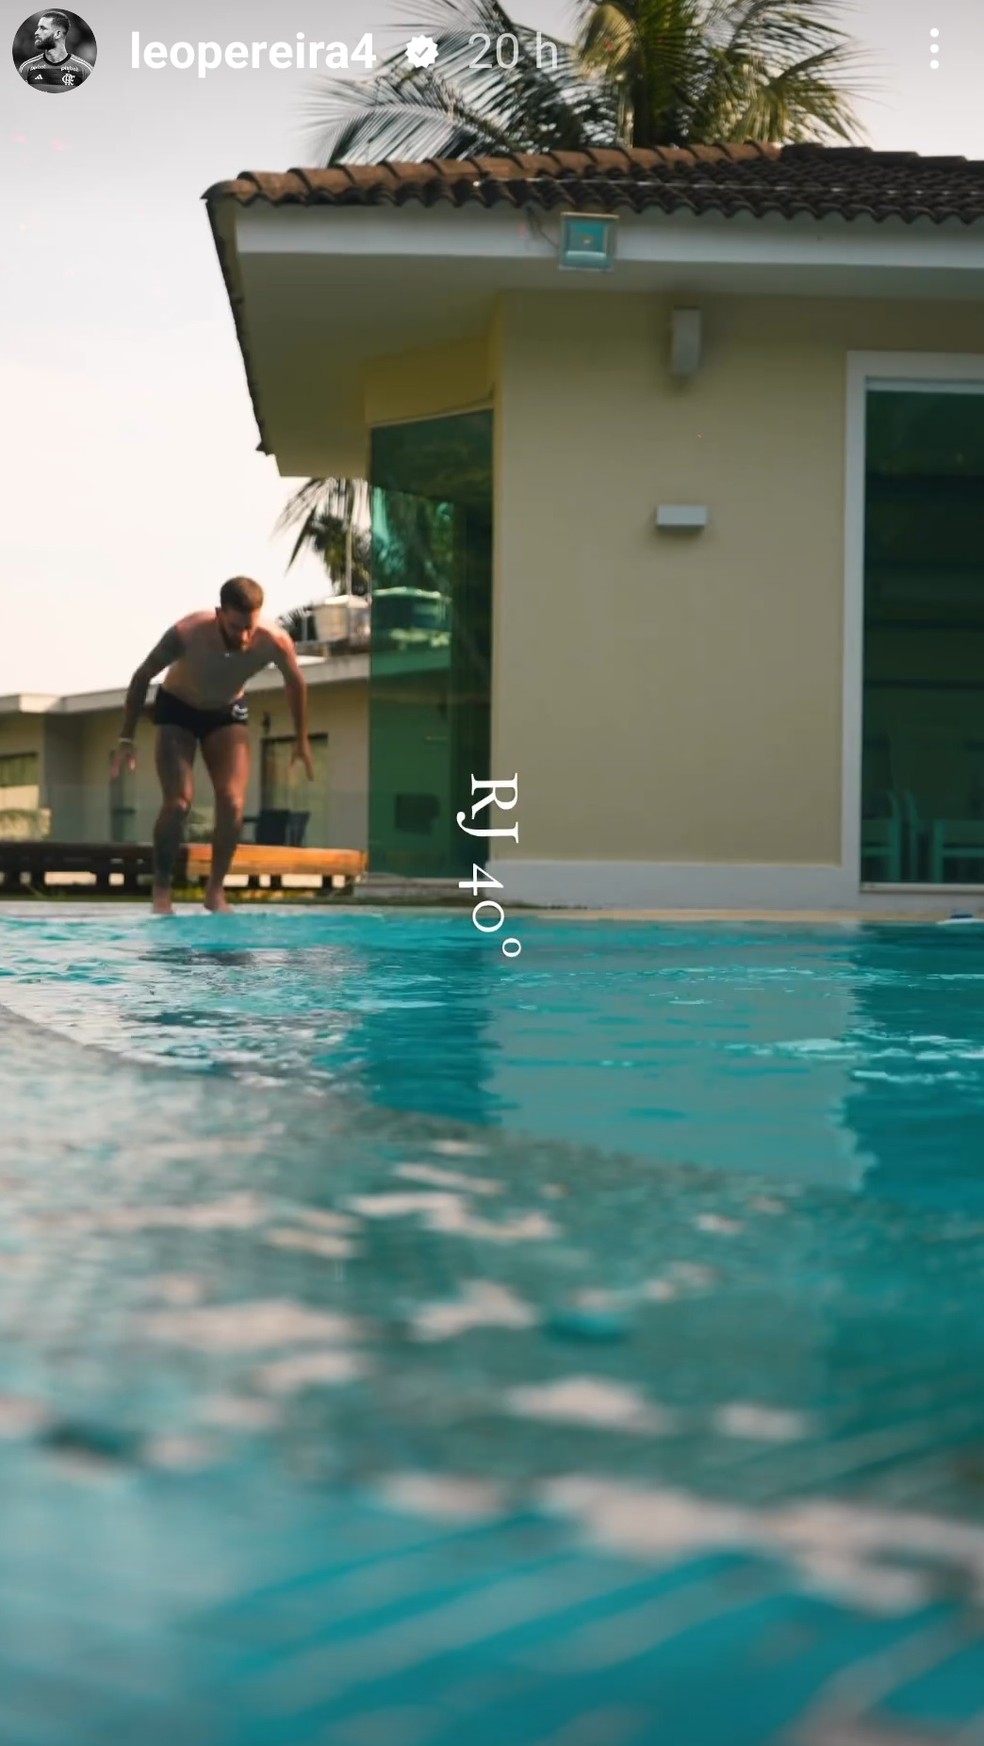 Leo Pereira mergulha na piscina de sua mansão — Foto: reprodução/ instagram